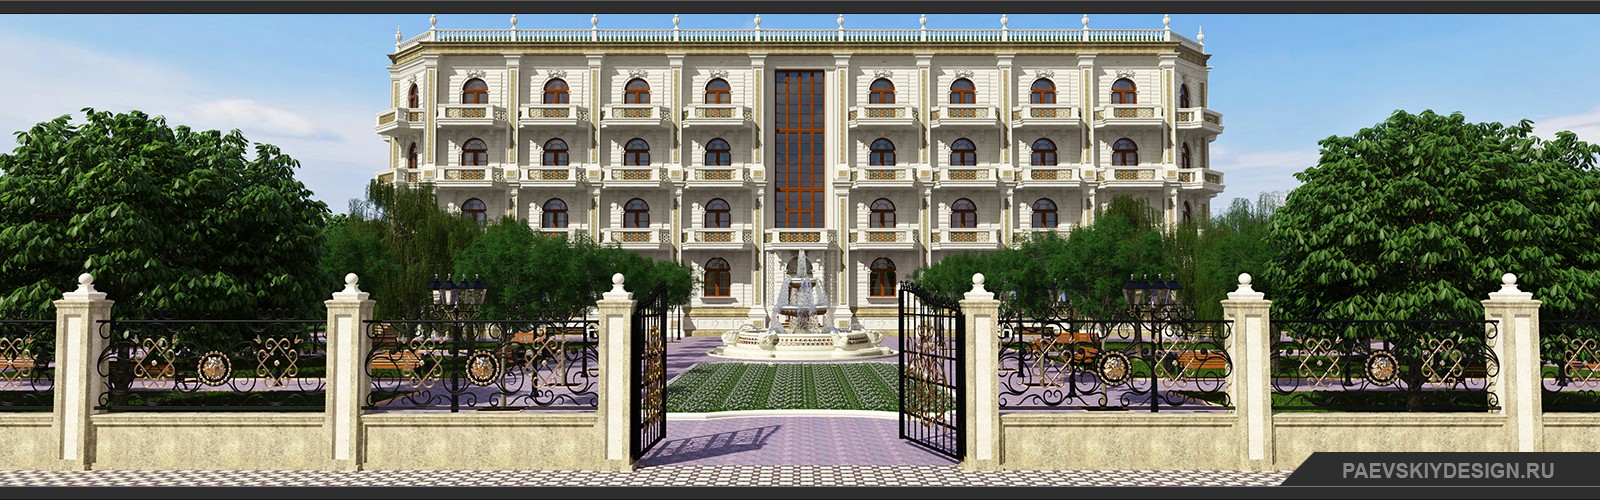 Благоустройство территории гостиницы и дизайн фасада